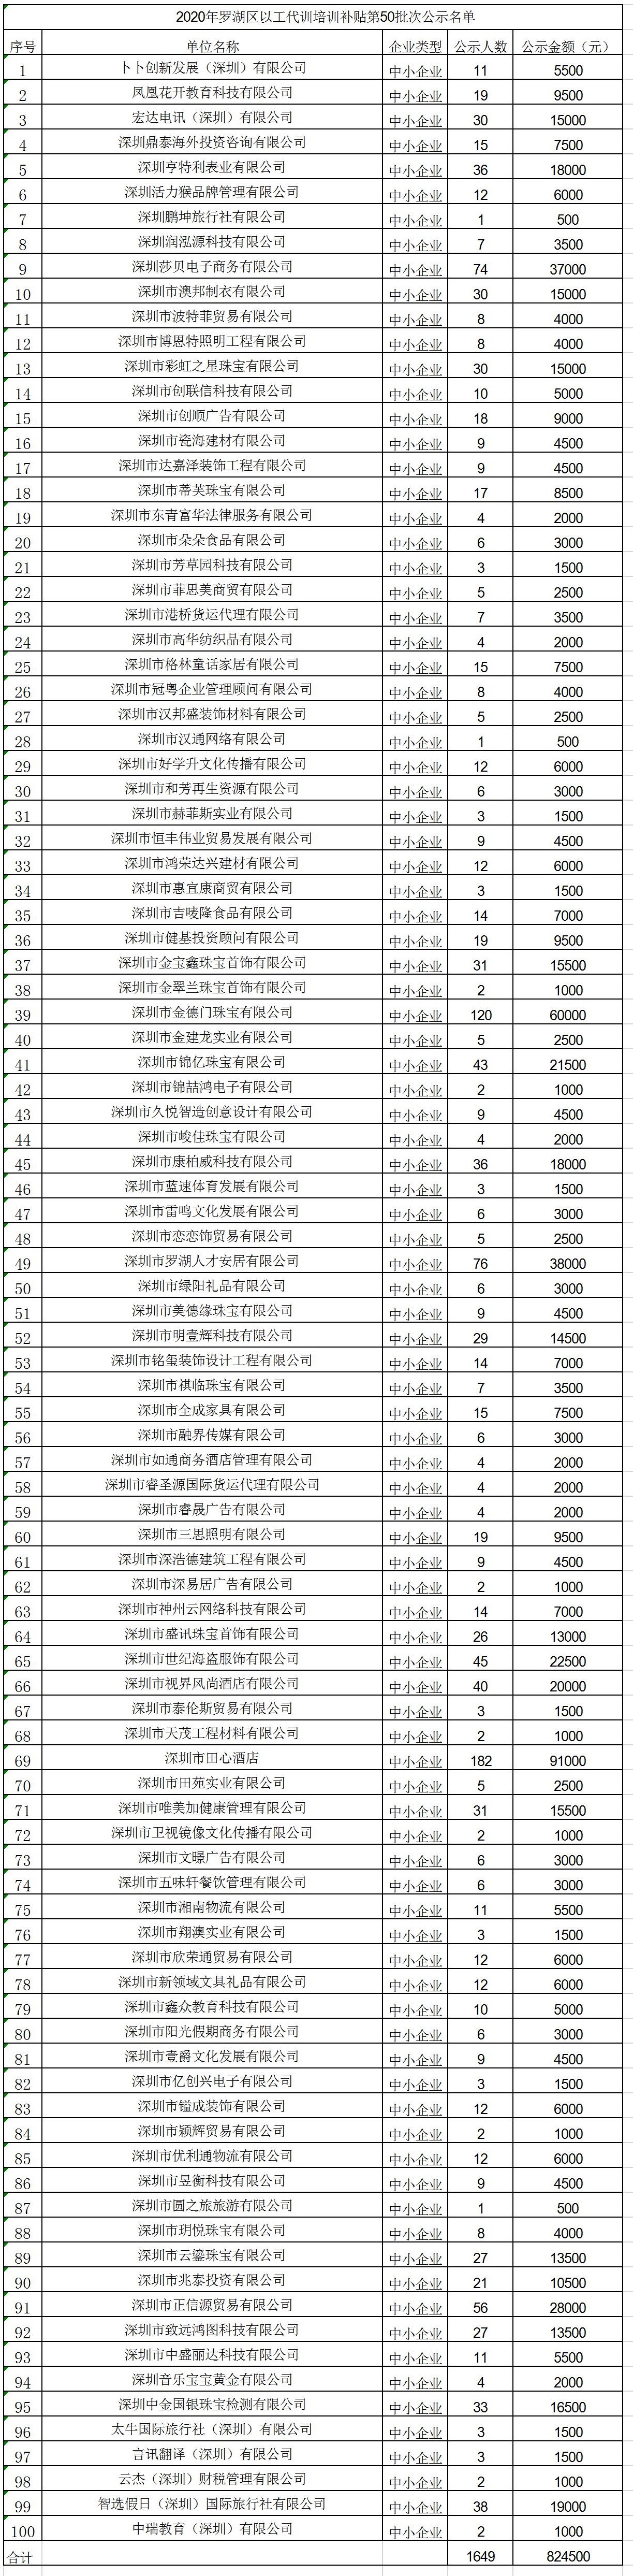 2020年深圳市罗湖区以工代训培训补贴第50批次公示名单.jpg